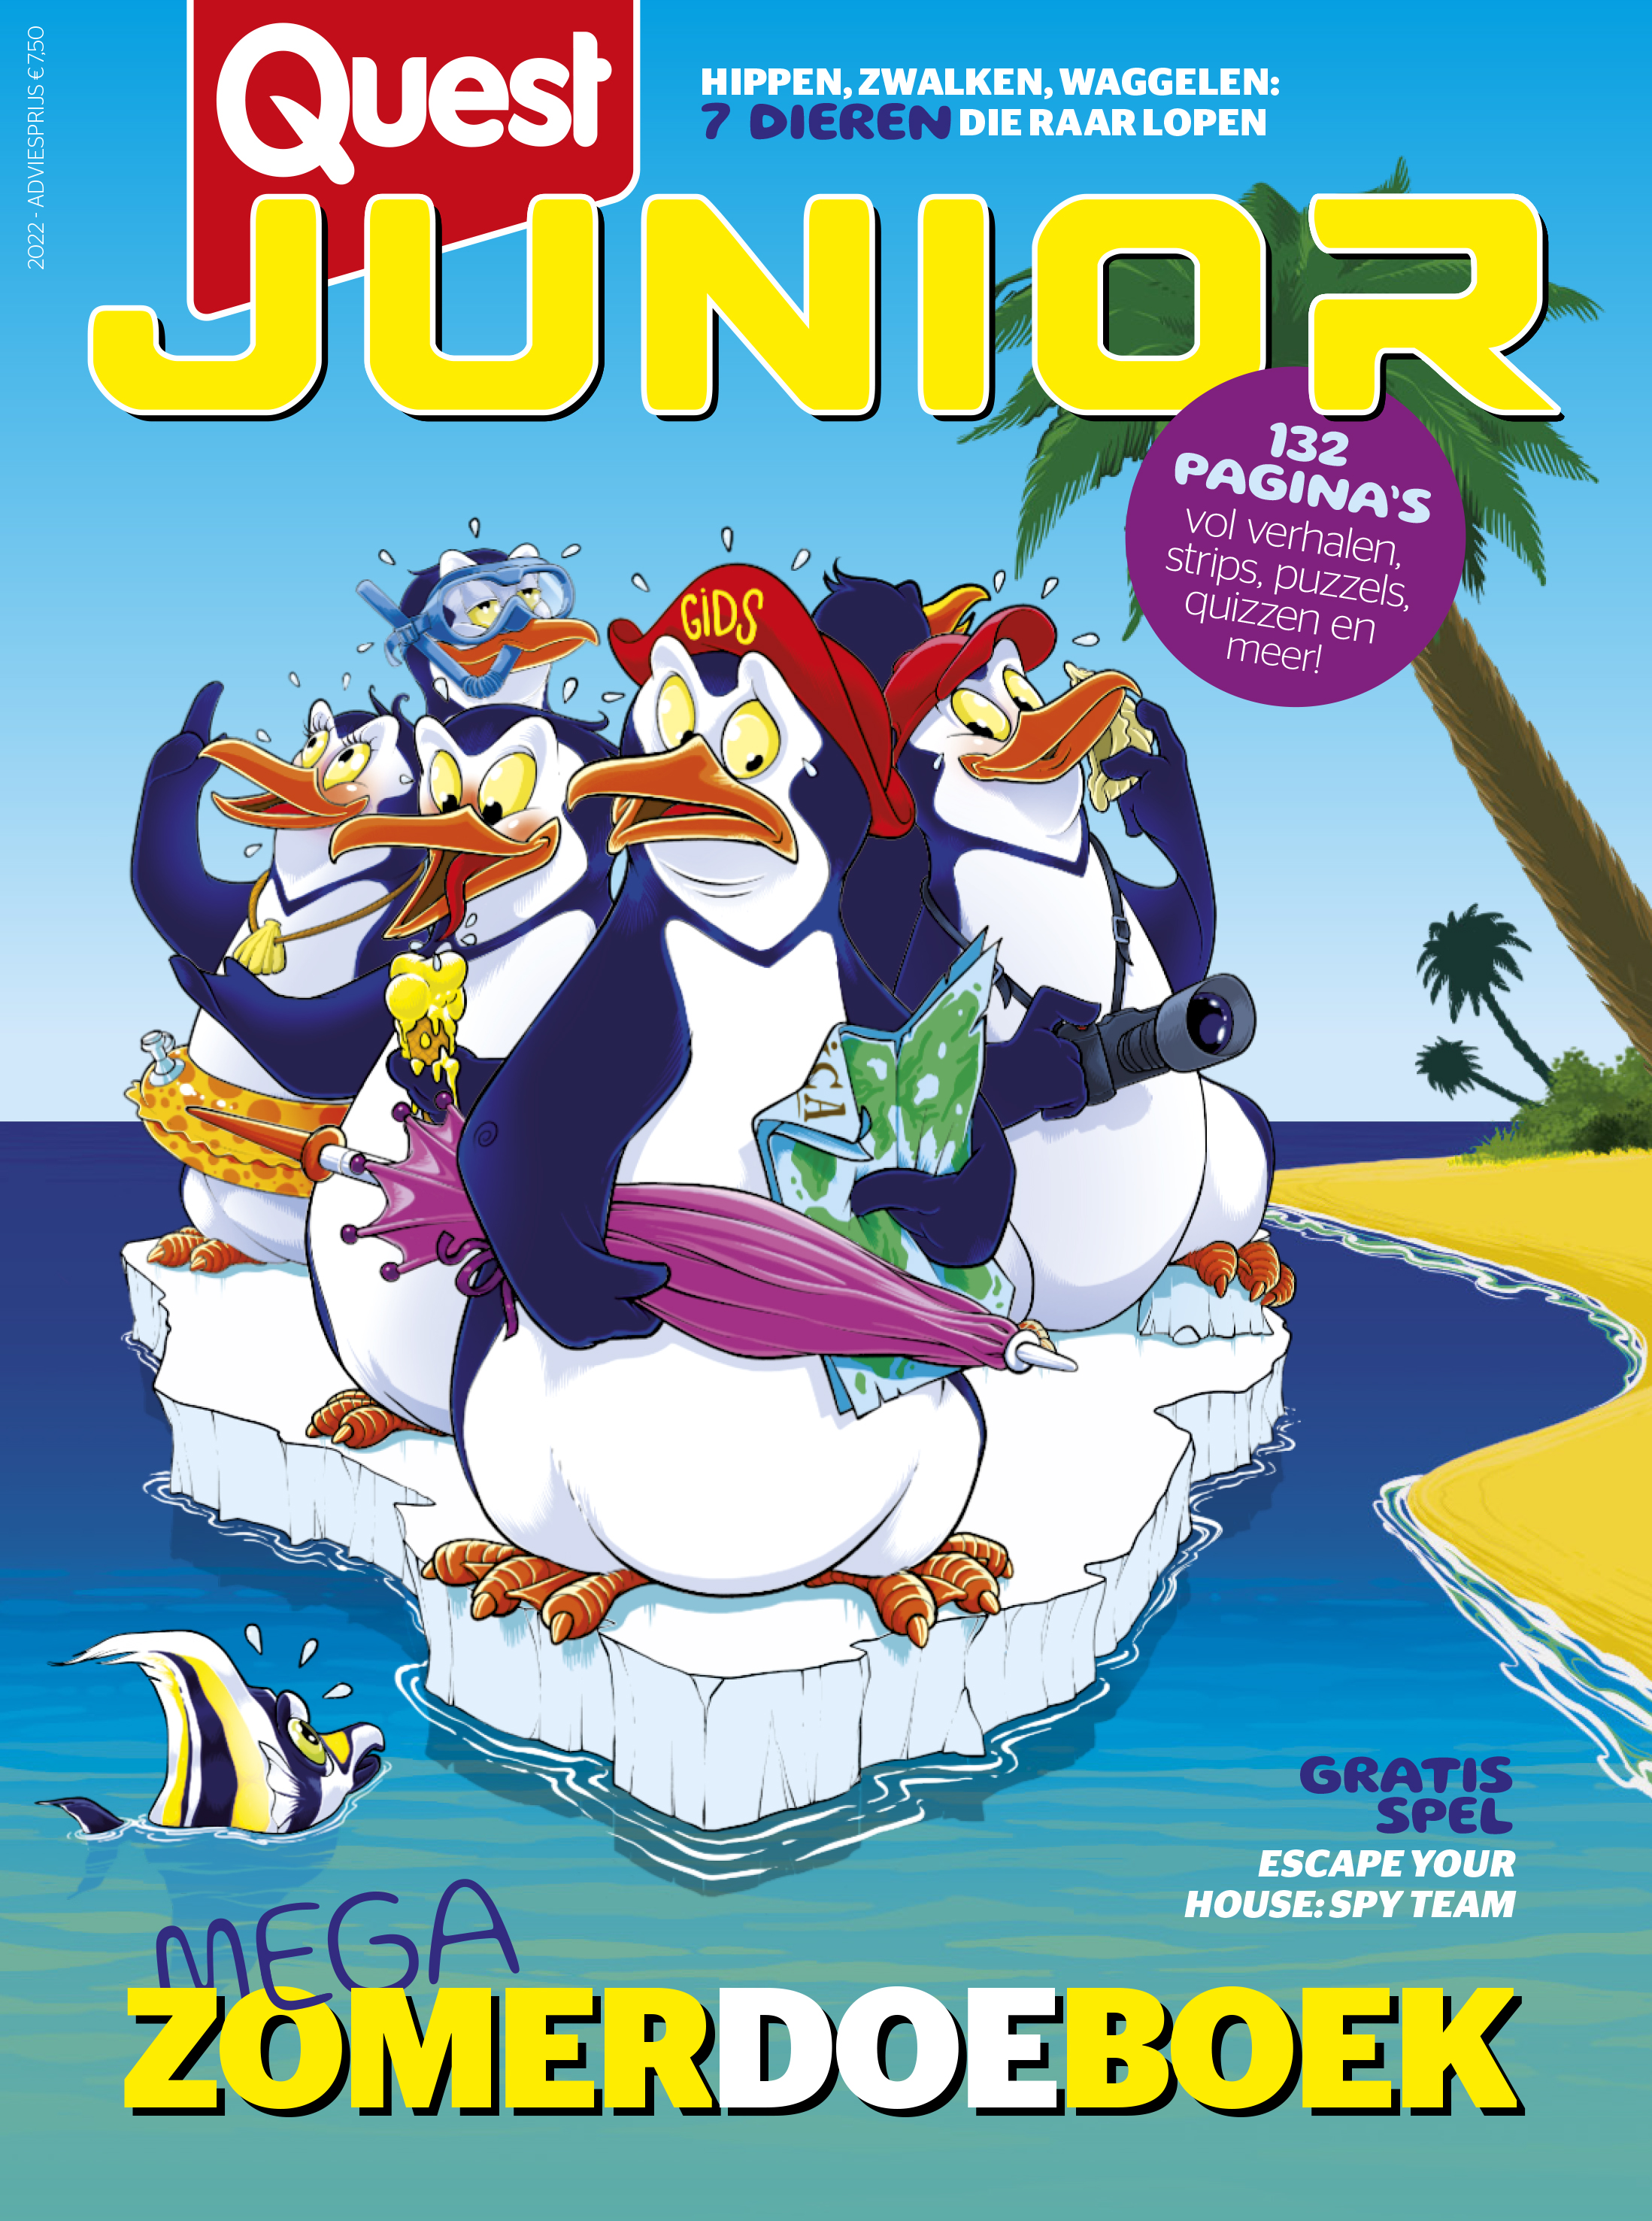 Quest Junior zomerboek 2022 - vakantieboek